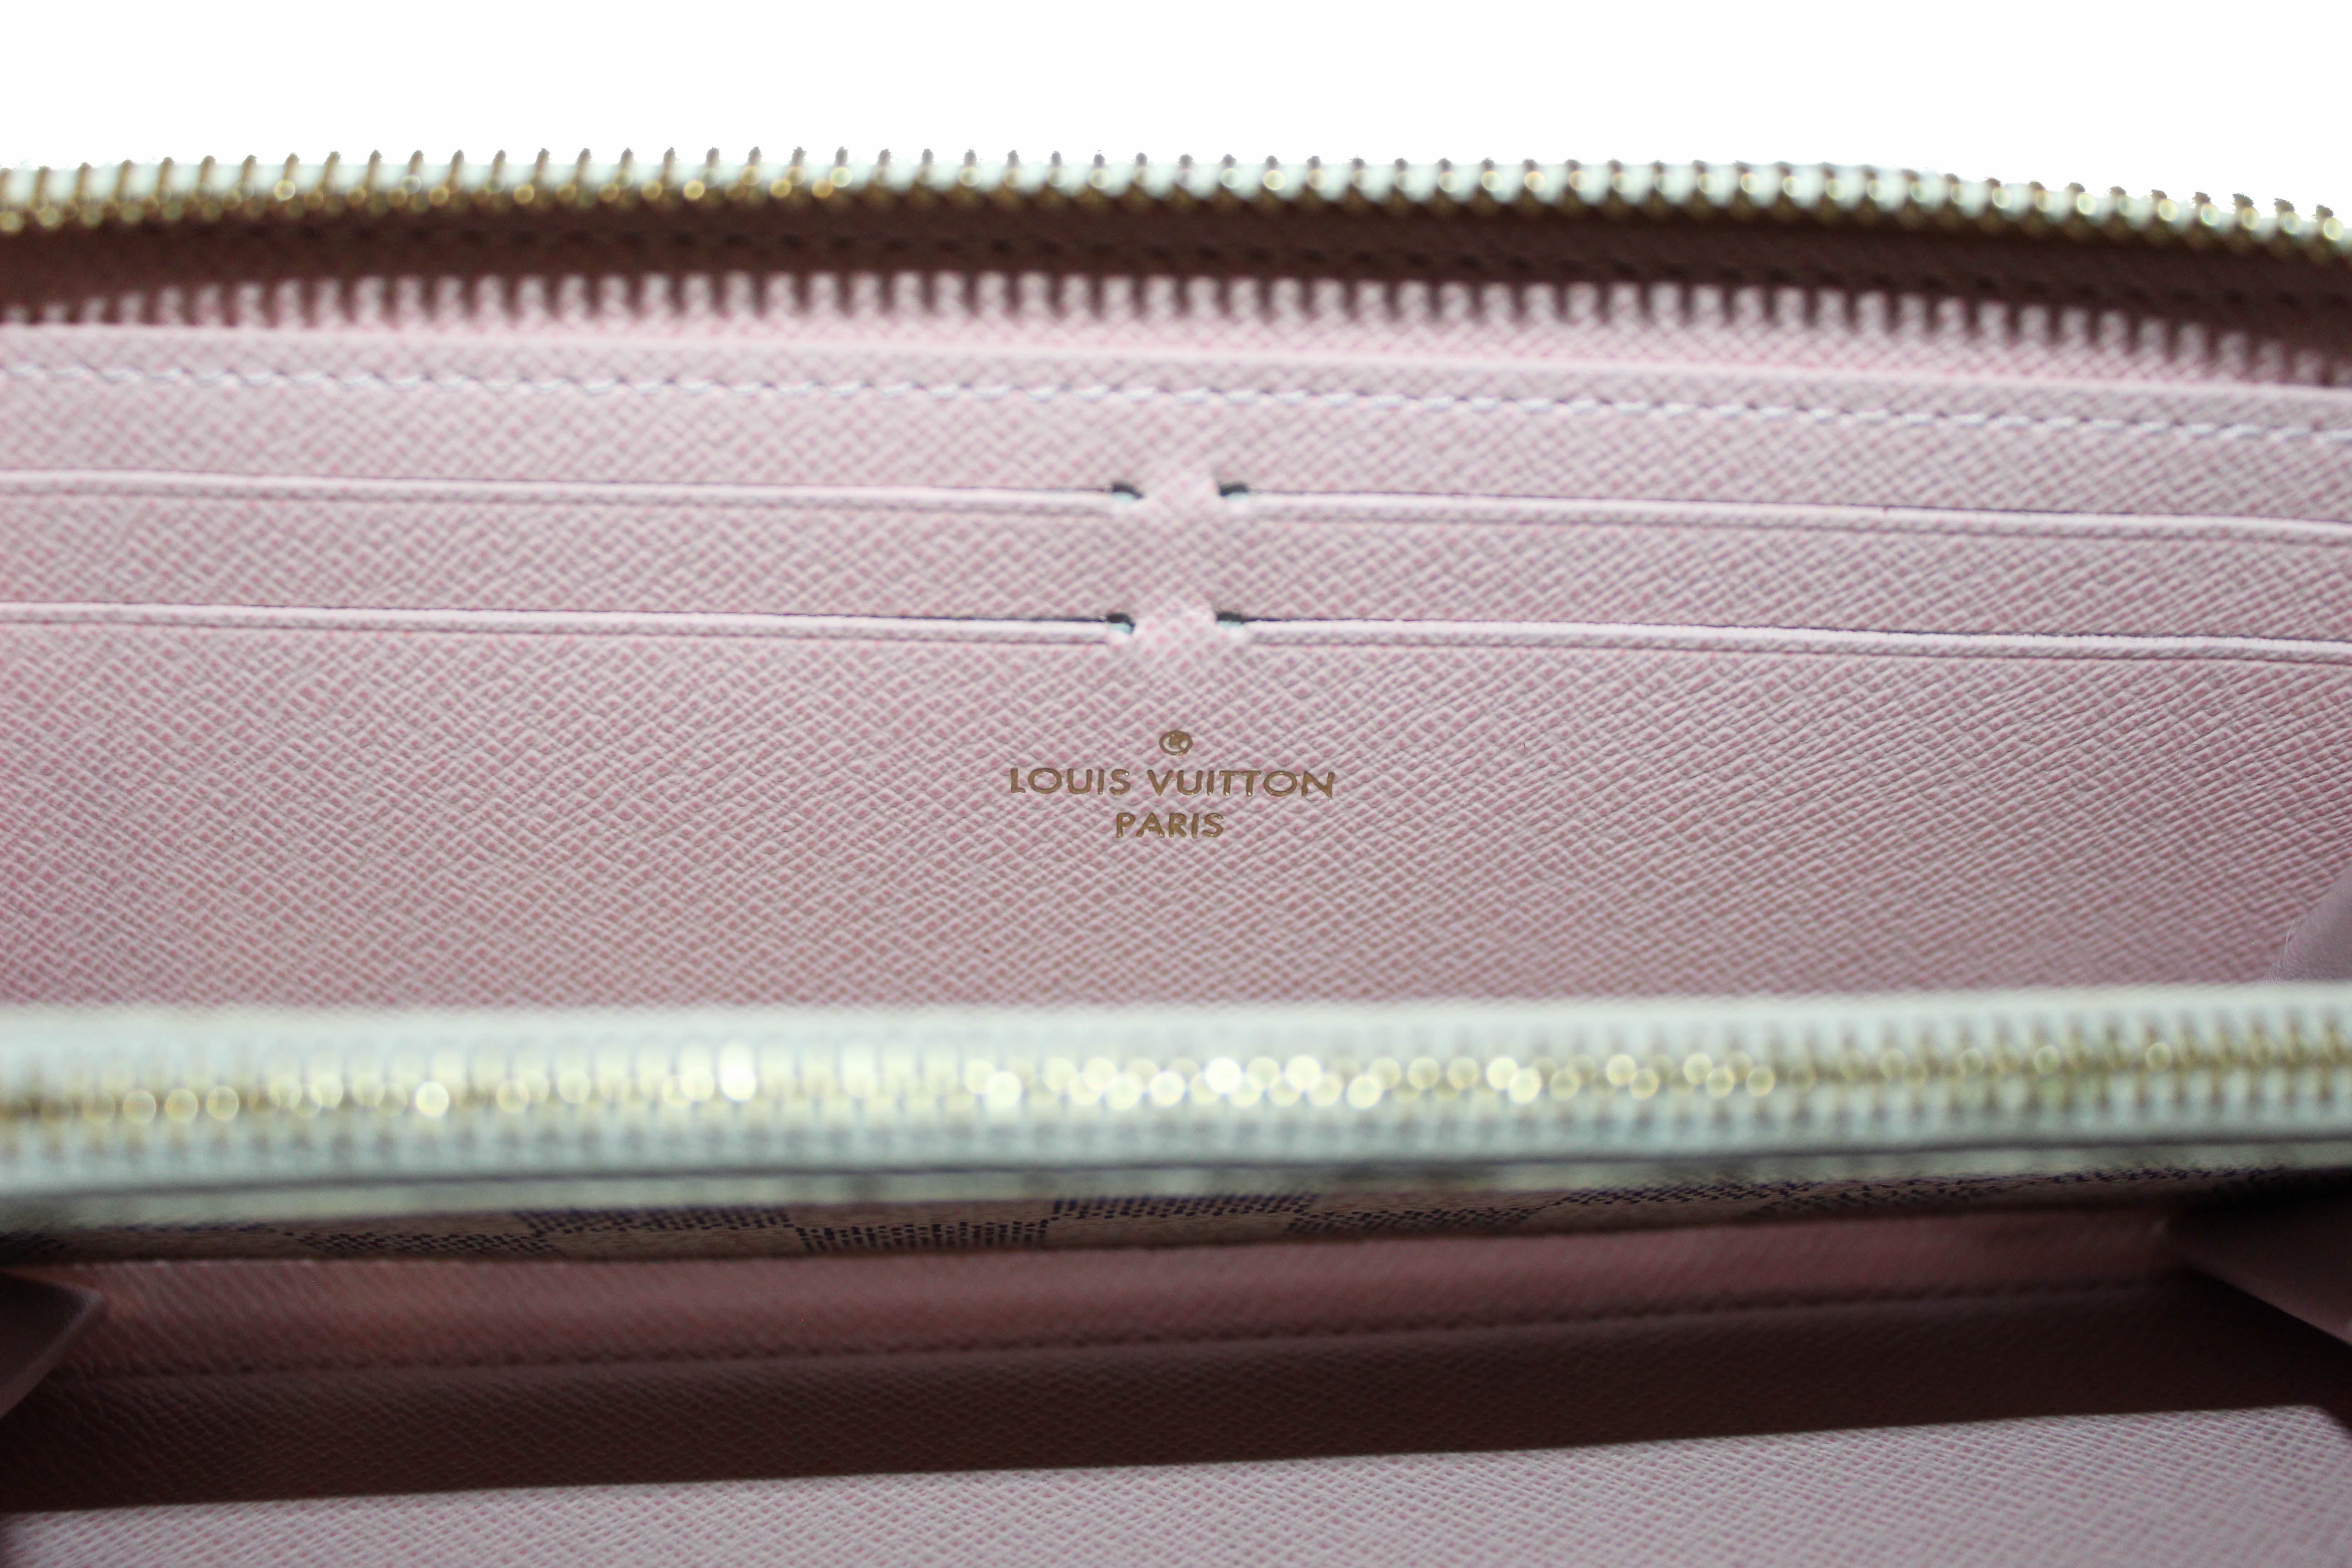 Authentic Louis Vuitton Damier Azur Canvas Clemence Zippy Wallet